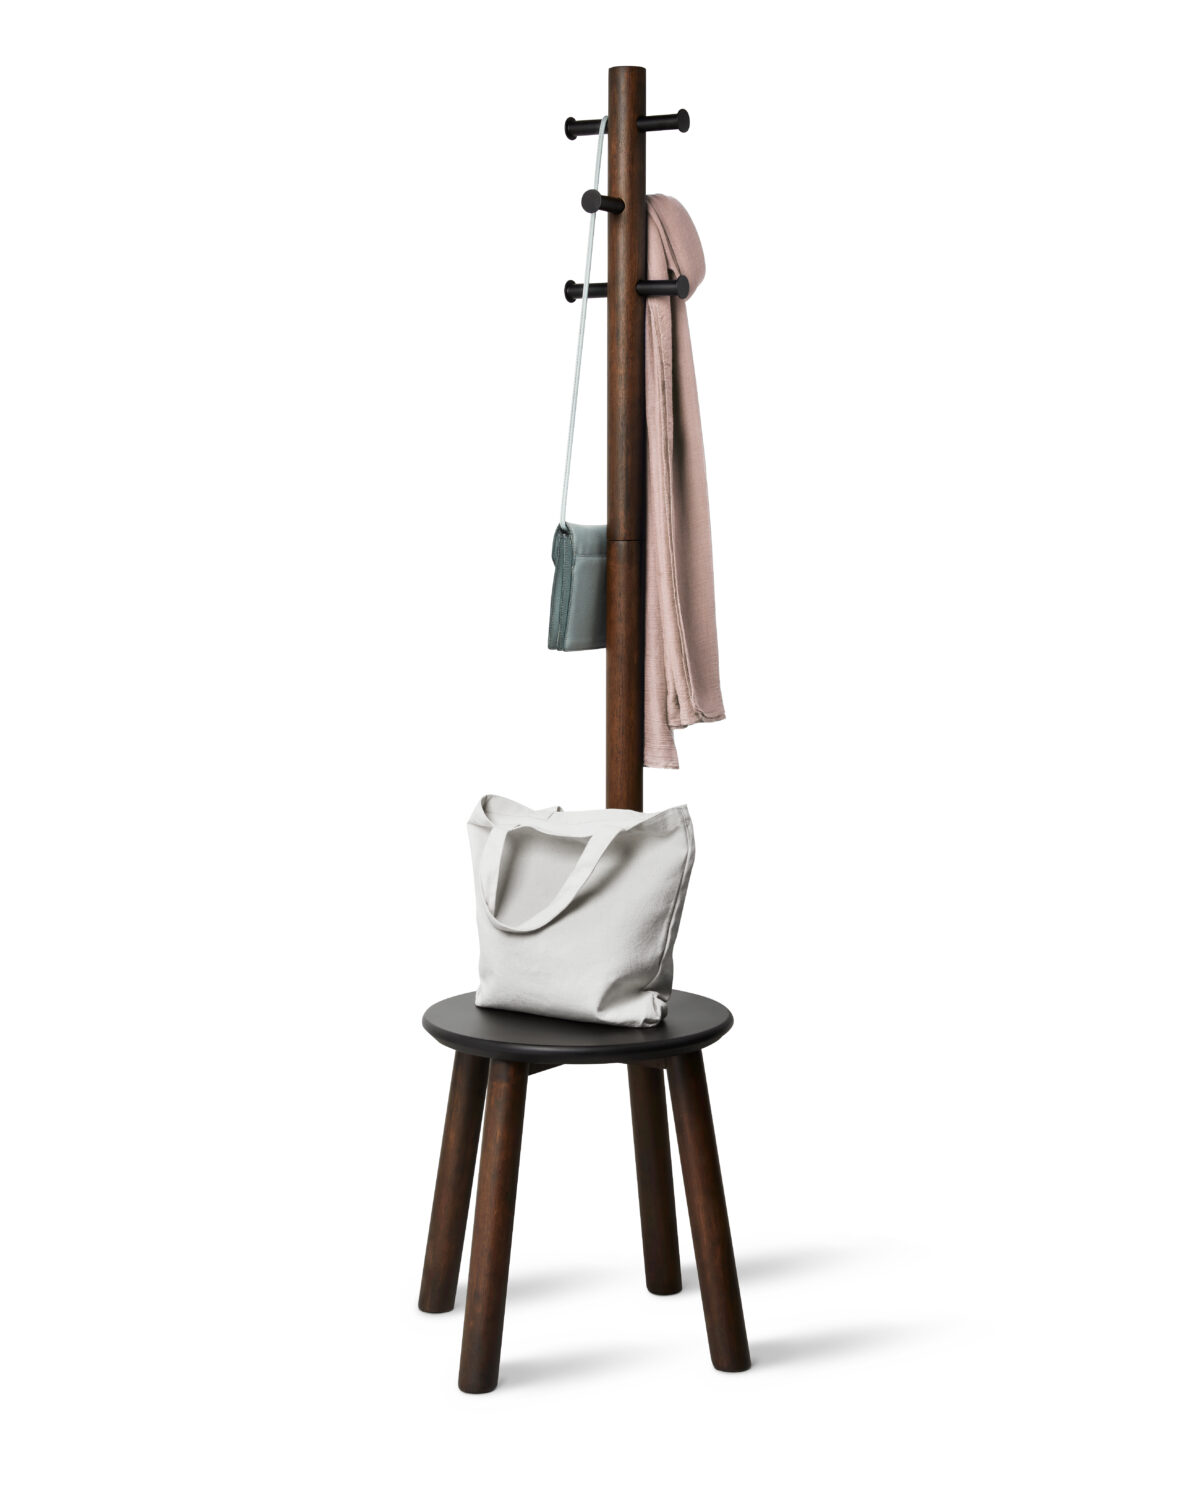 Закачалка със стол UMBRA PILLAR STOOL - цвят орех